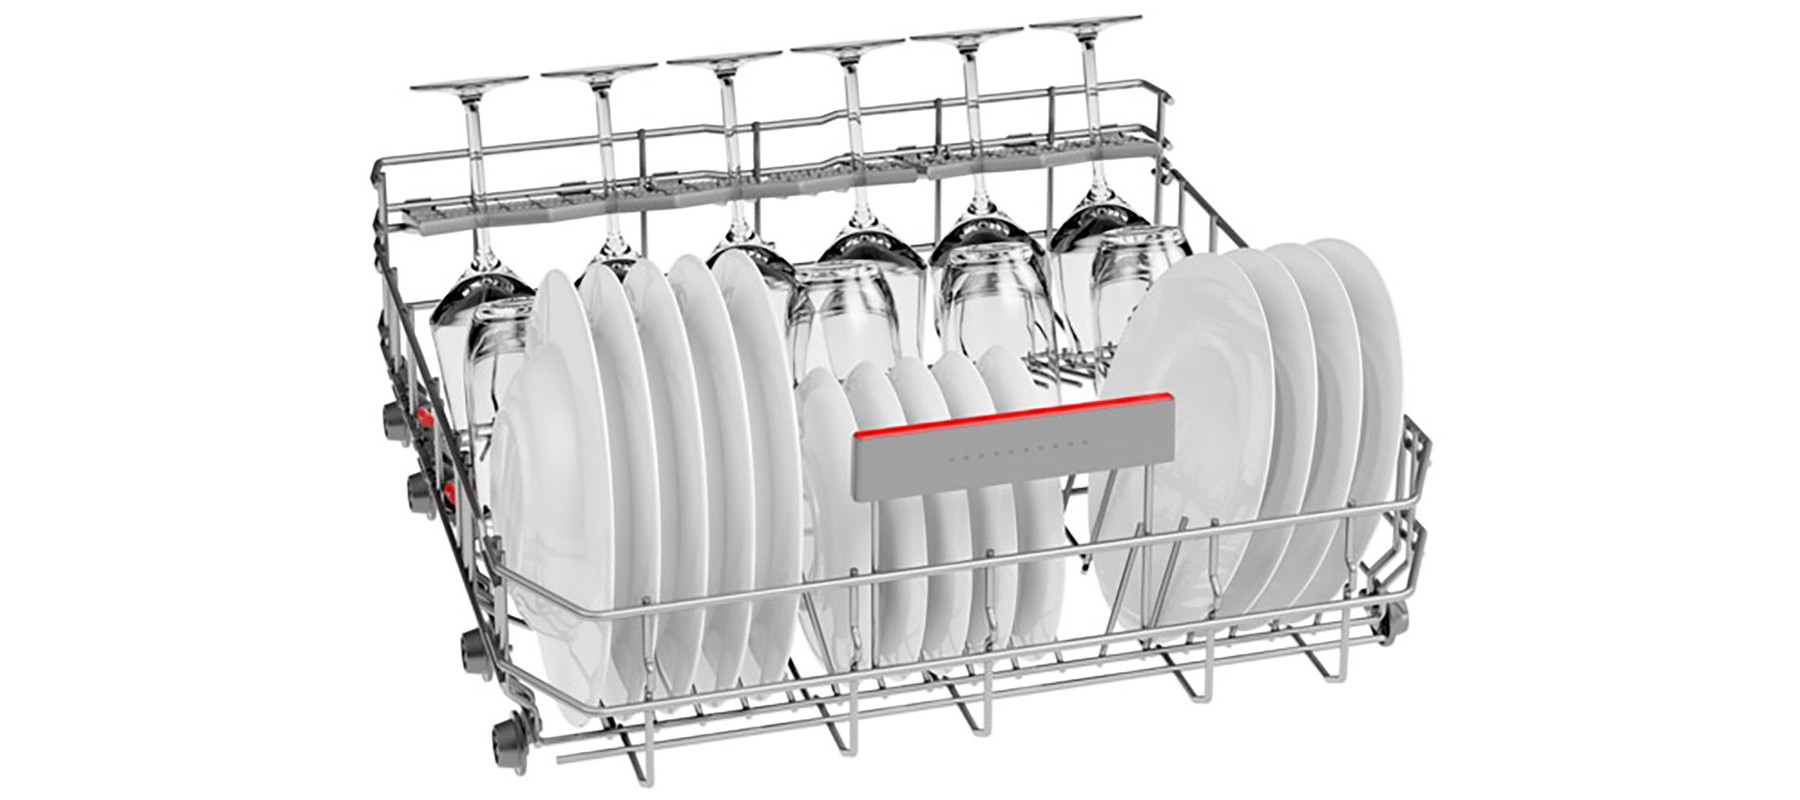 ماشین ظرفشویی بوش سری 6 مدل SMS67TW02B